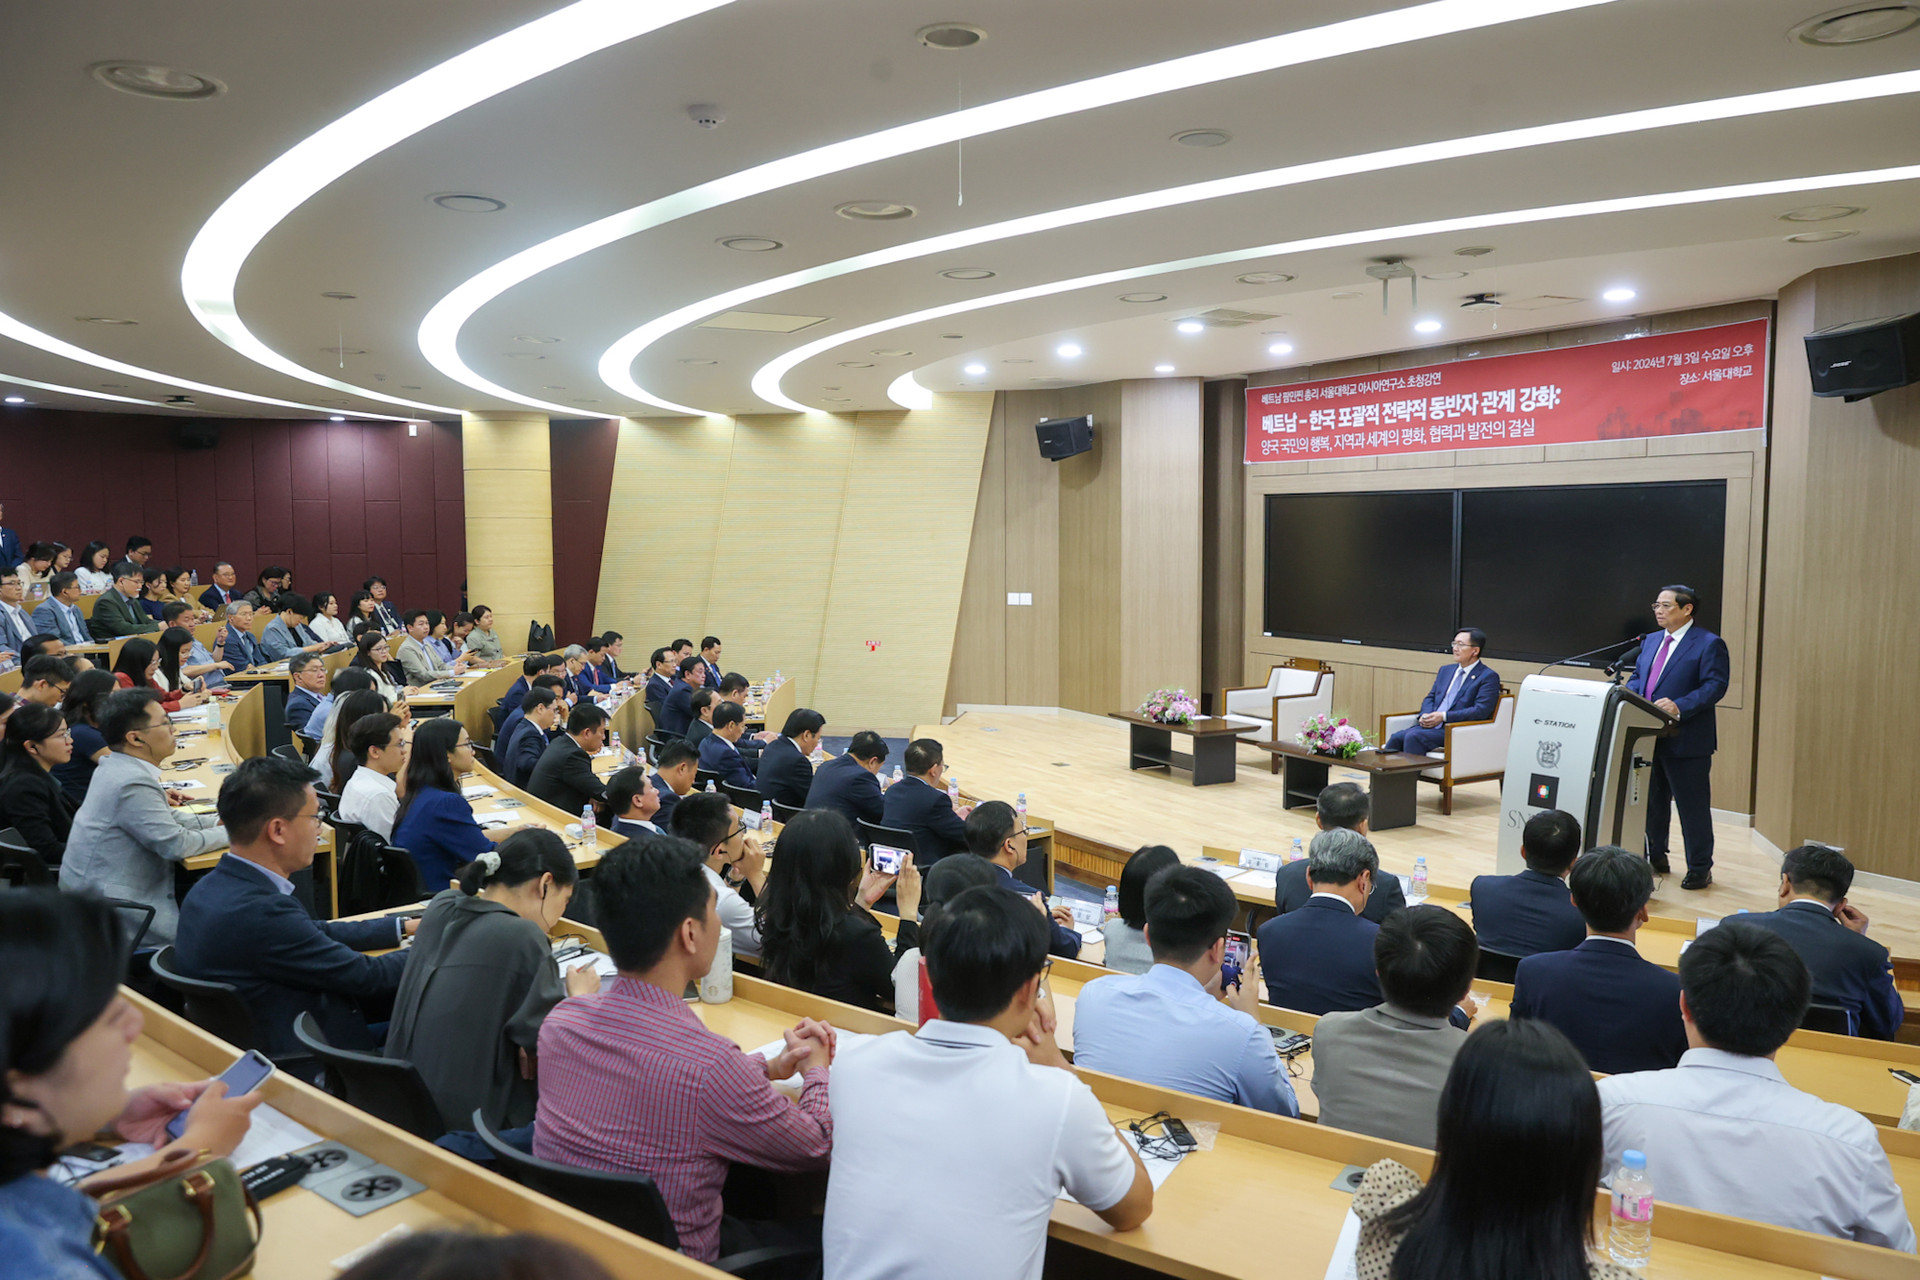 Thủ tướng gửi thông điệp quan trọng trong phát biểu chính sách tại Đại học Quốc gia của Hàn Quốc- Ảnh 5.